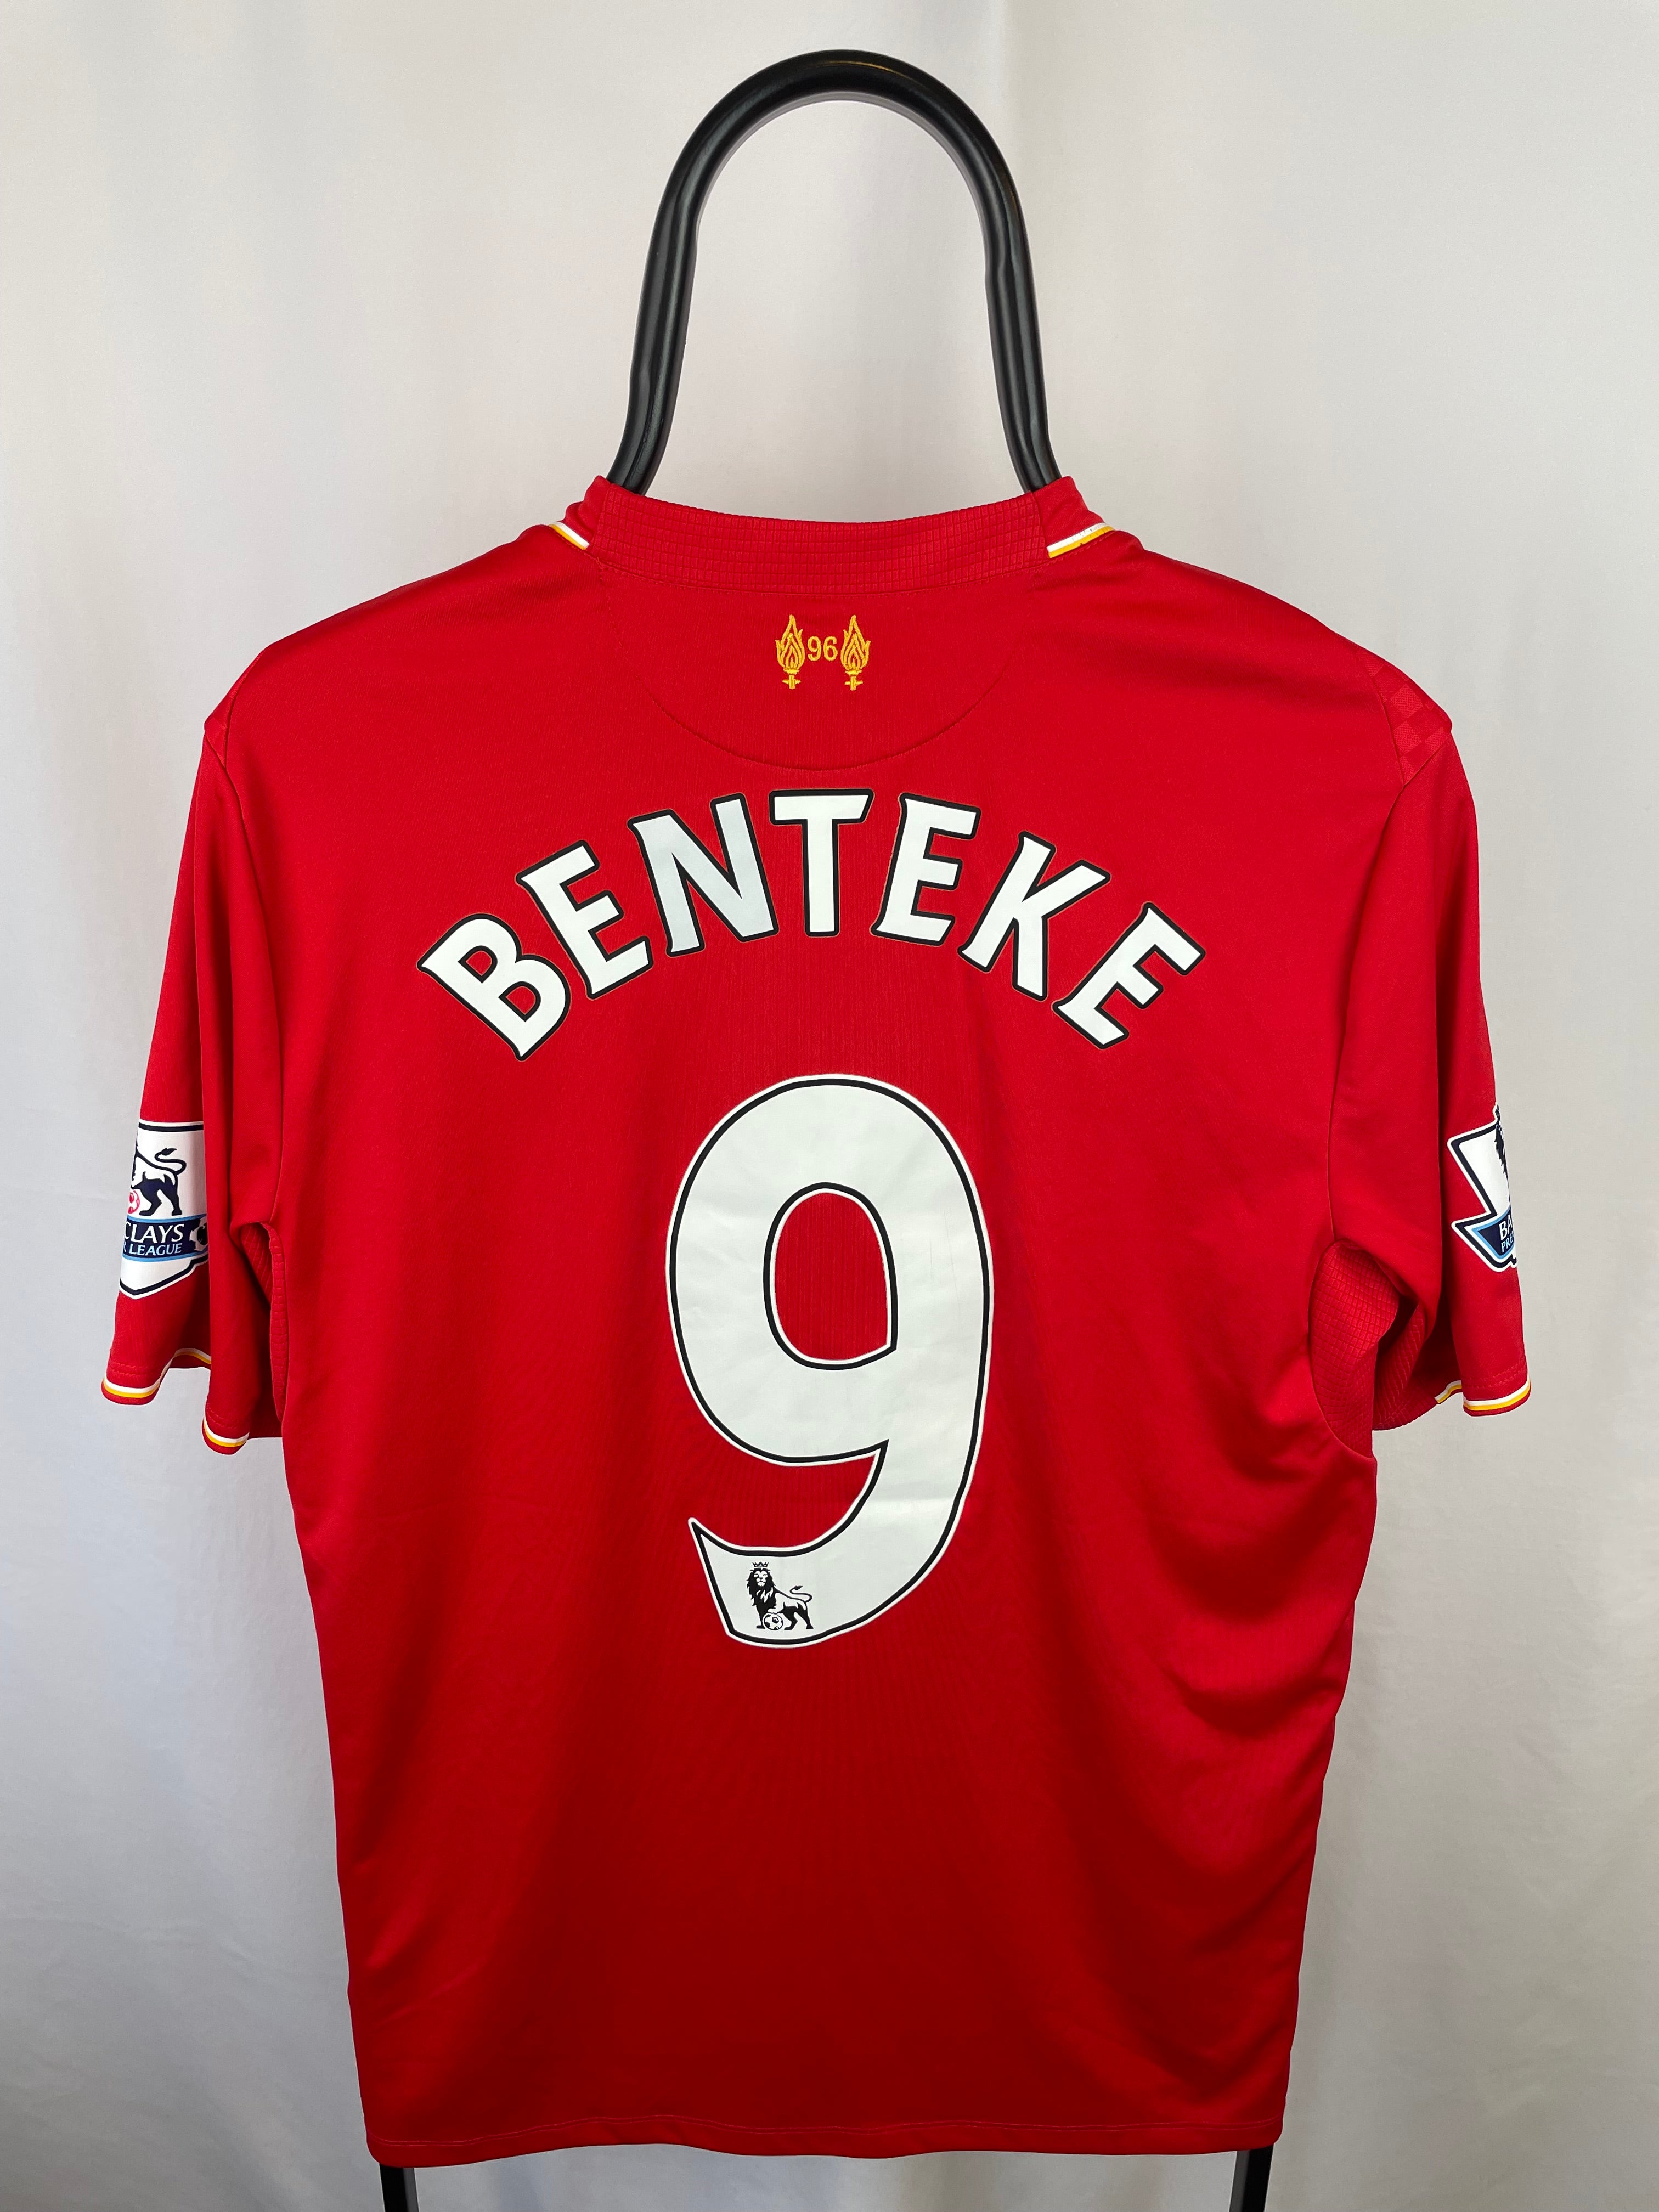 Christian Benteke Liverpool 15/16 hjemmebanetrøje - M